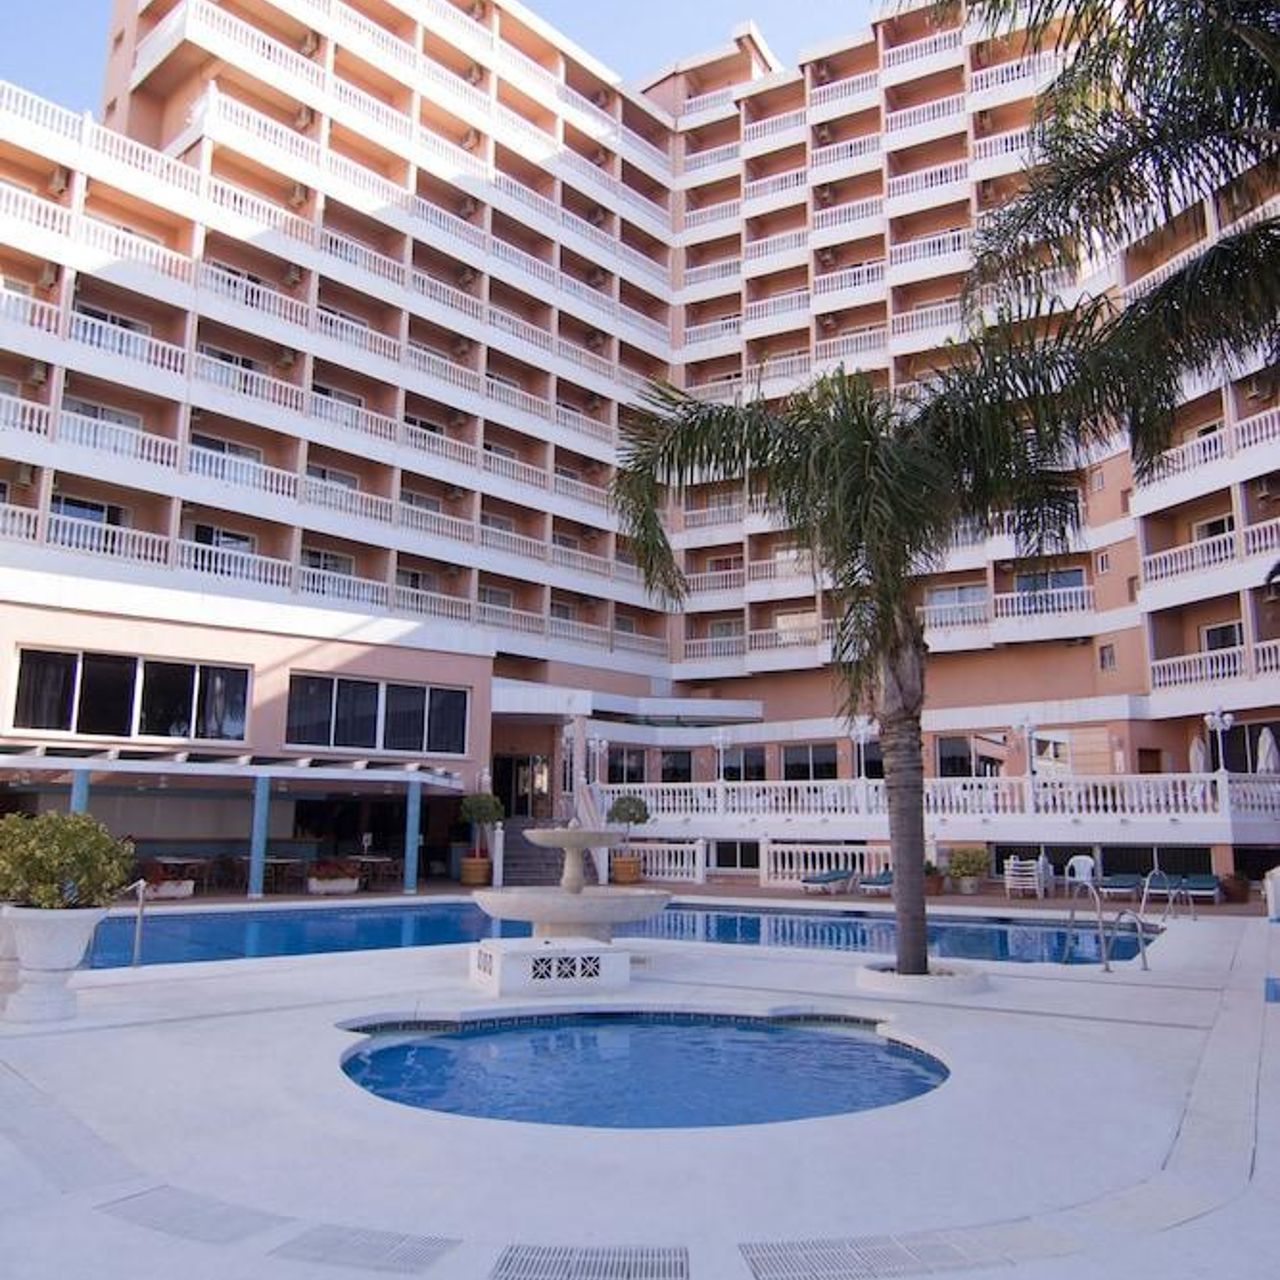 Hotel Parasol Garden - Torremolinos - Great prices at HOTEL INFO